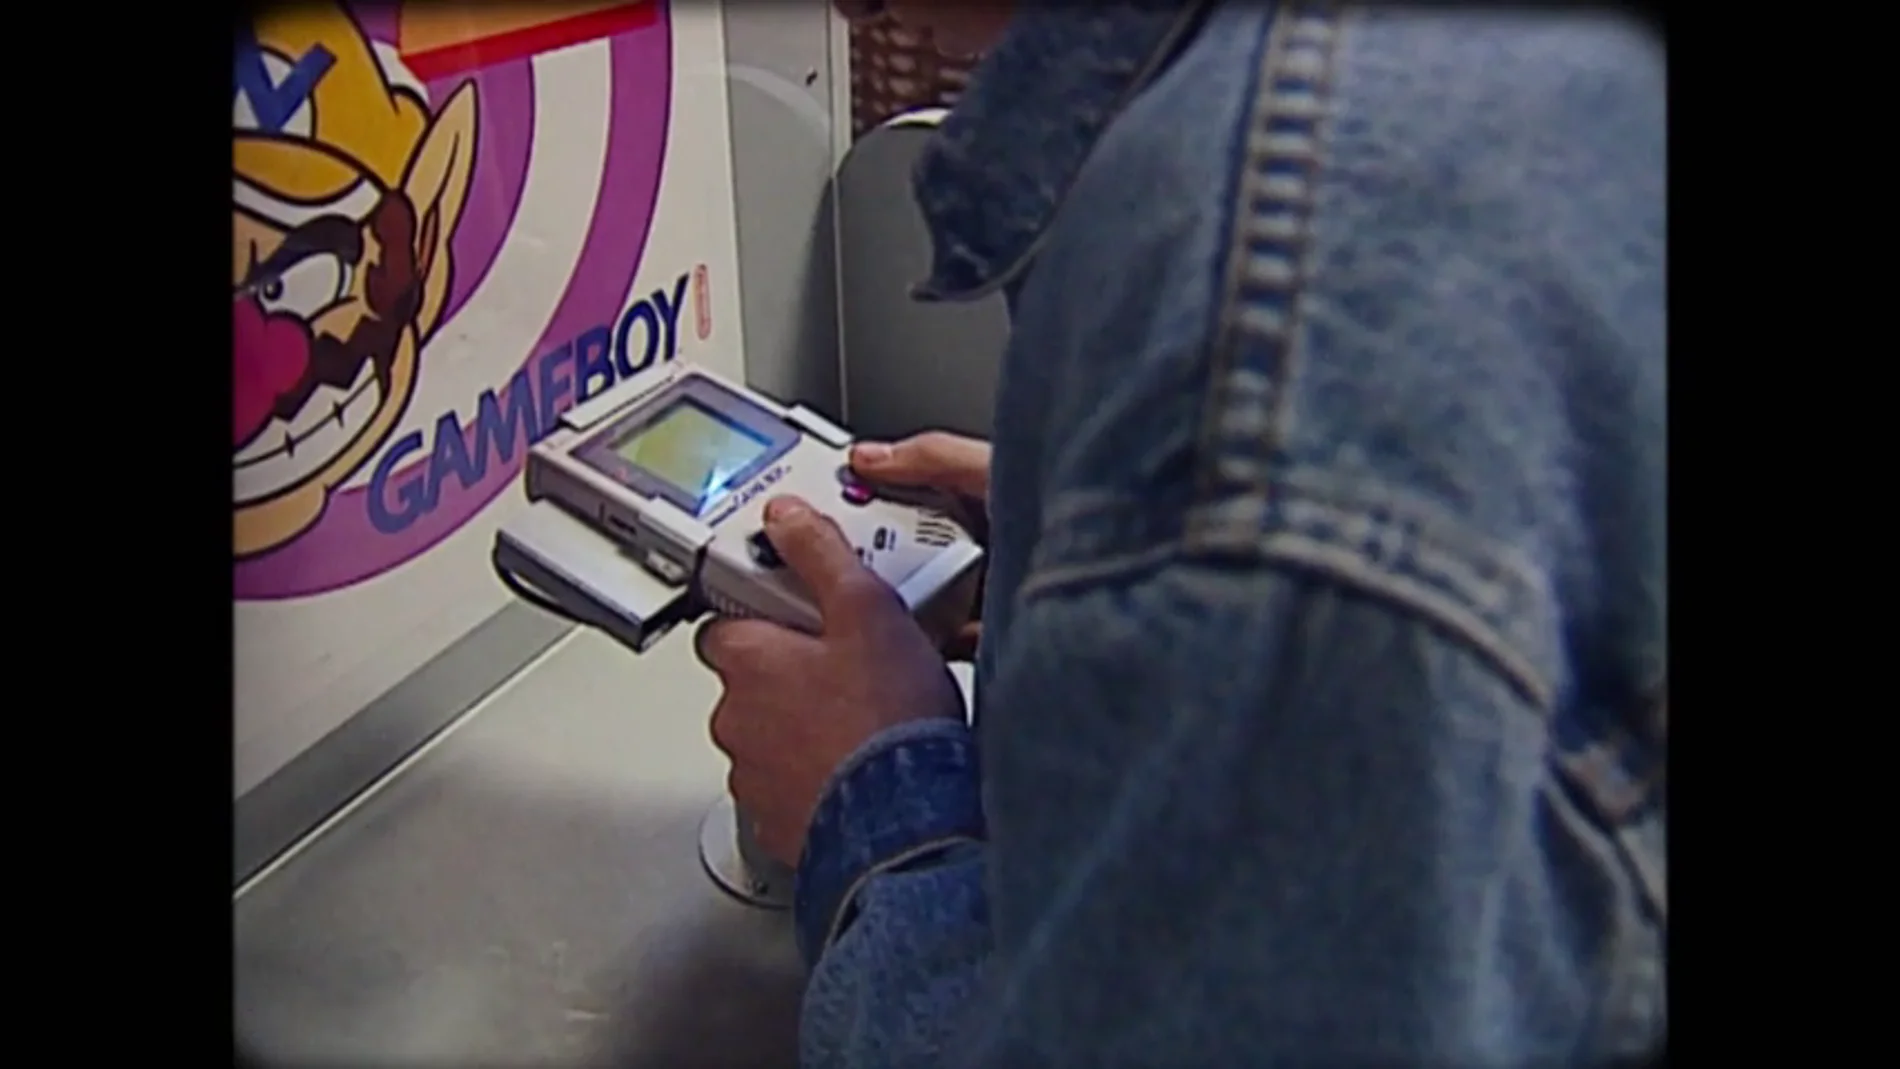 De los salones recreativos a la Game Boy: la consola portátil revolucionó los hogares en la década de los 90 